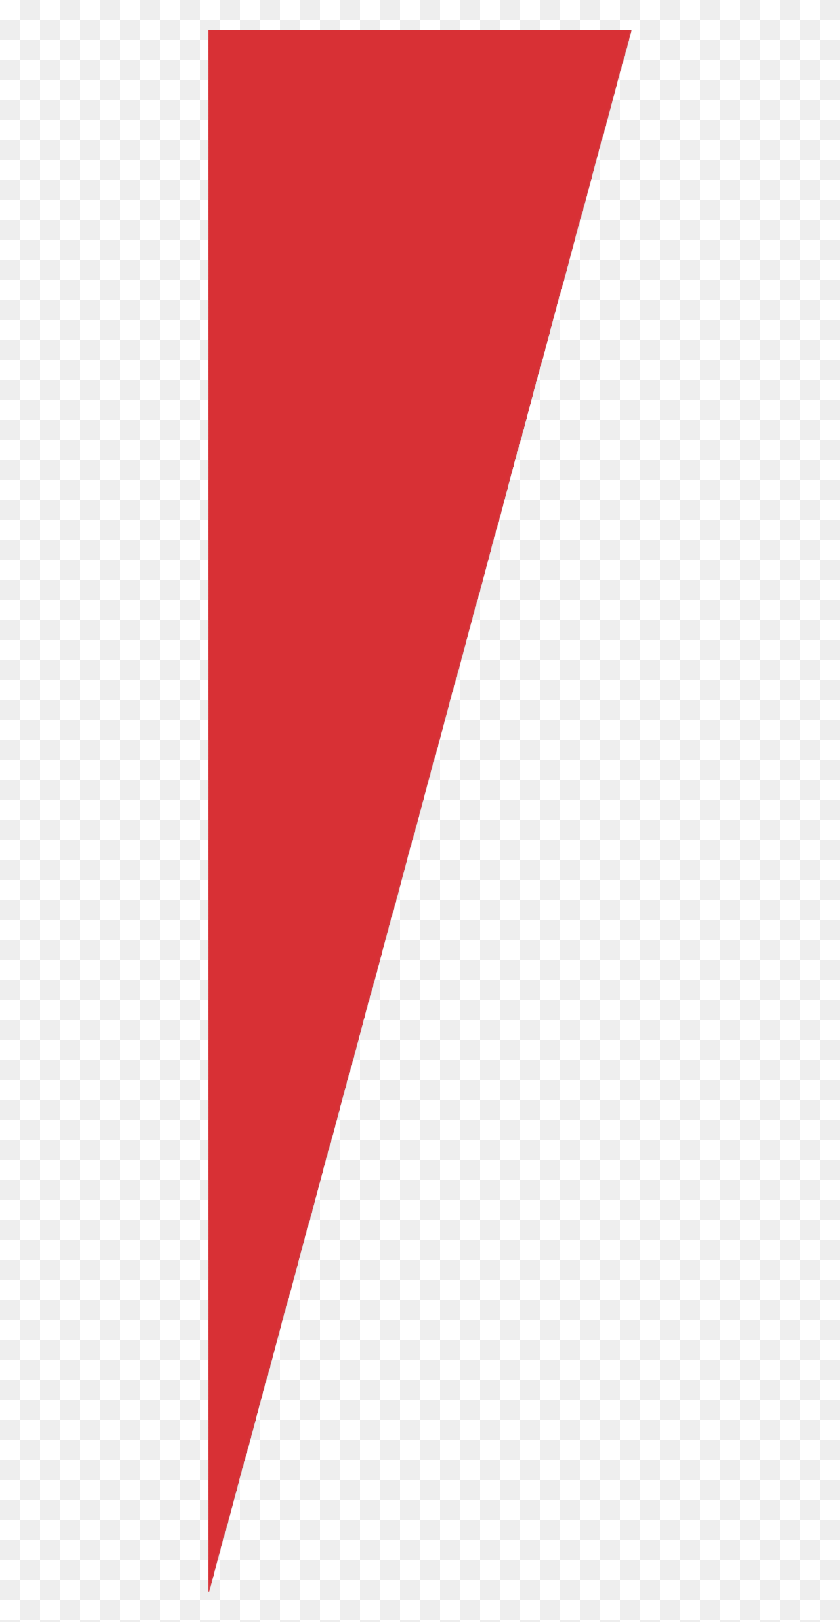 424x1562 Descargar Png Triángulo Rojo Triángulo Rojo Esquina, Símbolo, Logotipo, Marca Registrada Hd Png